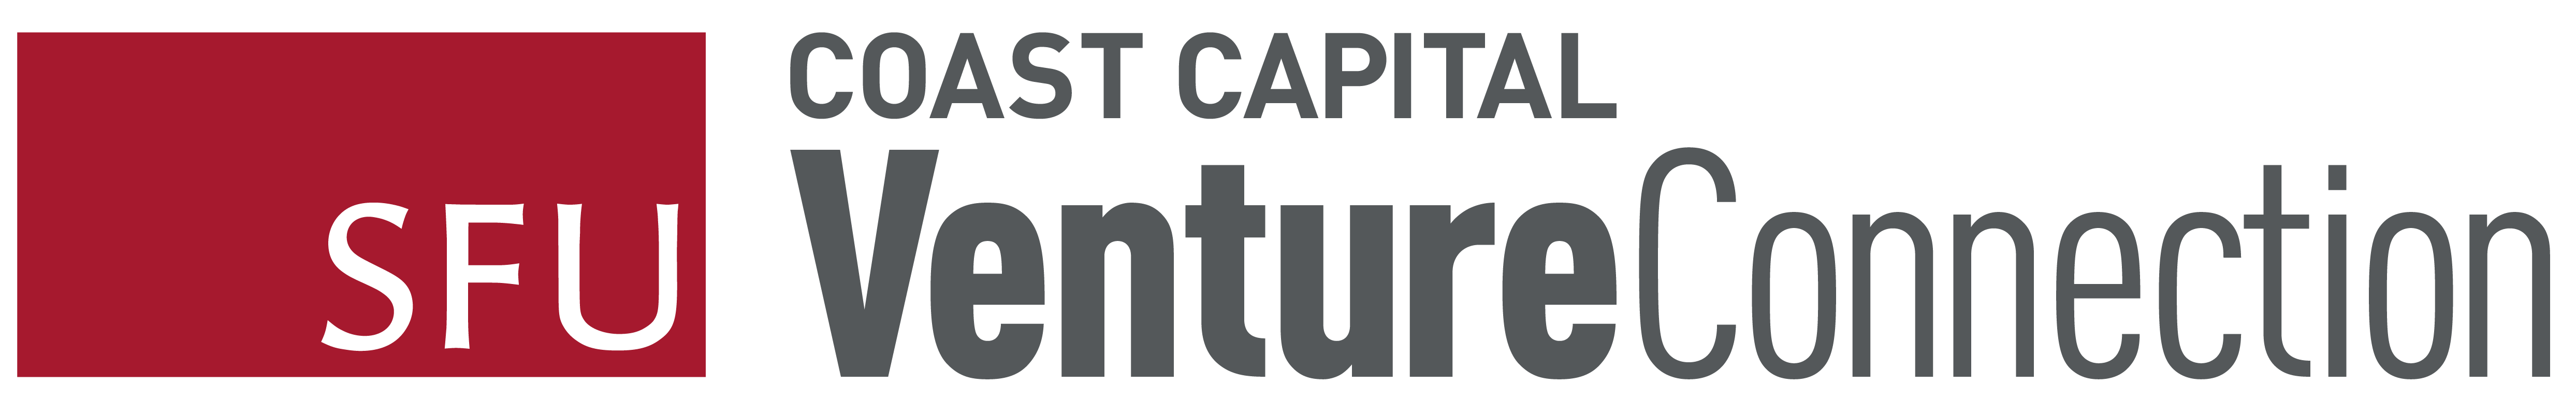 SFU-Coast-Capital-Logo